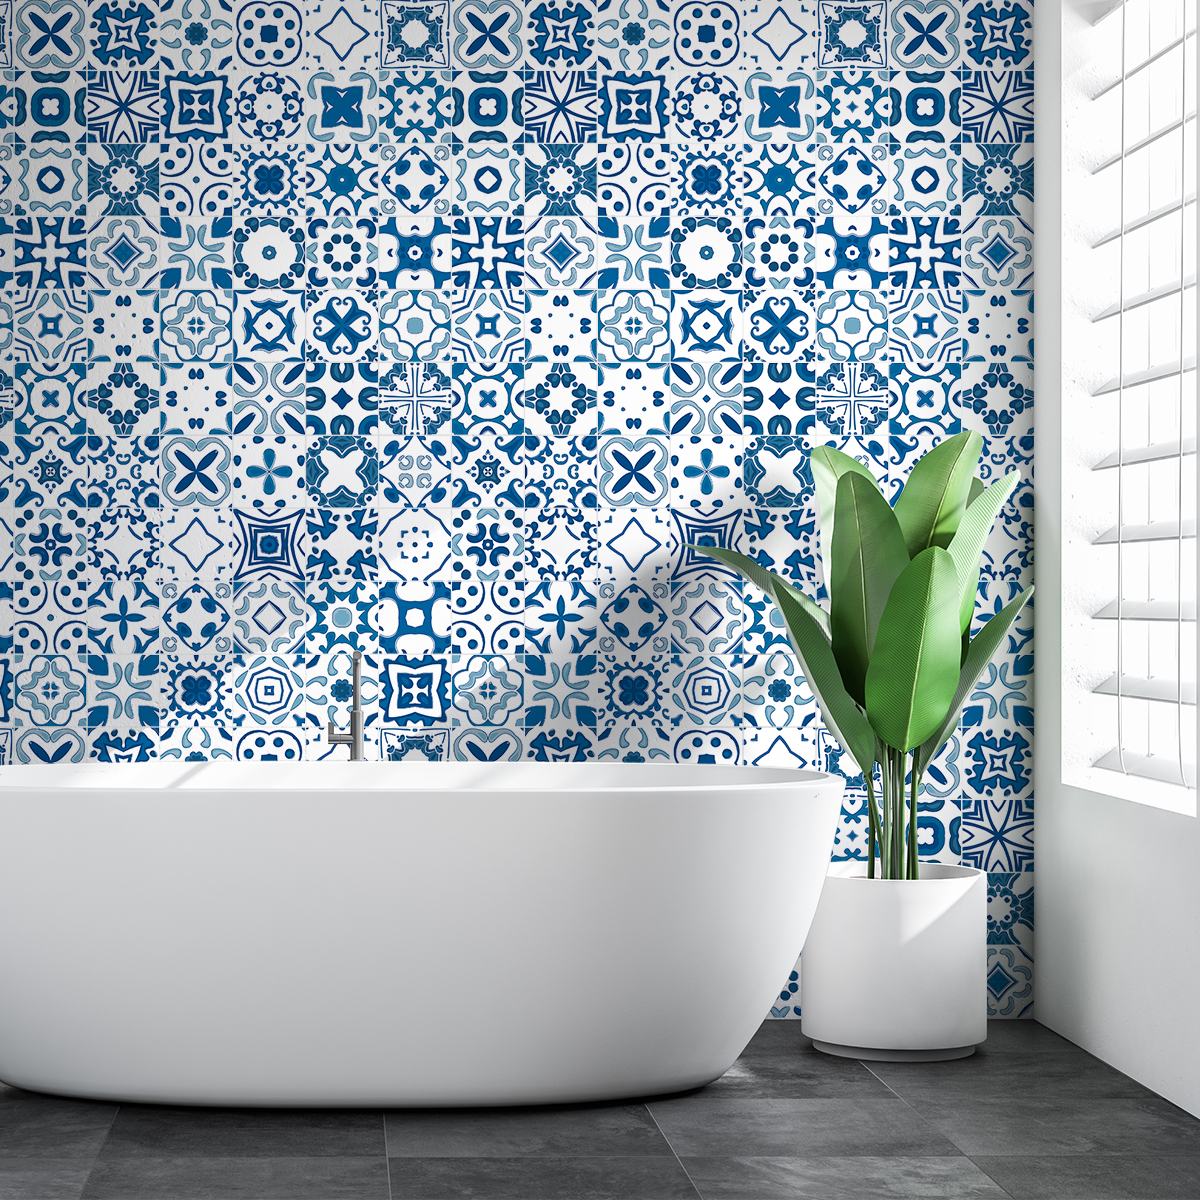 30 wall stickers cement tiles azulejos rifisio